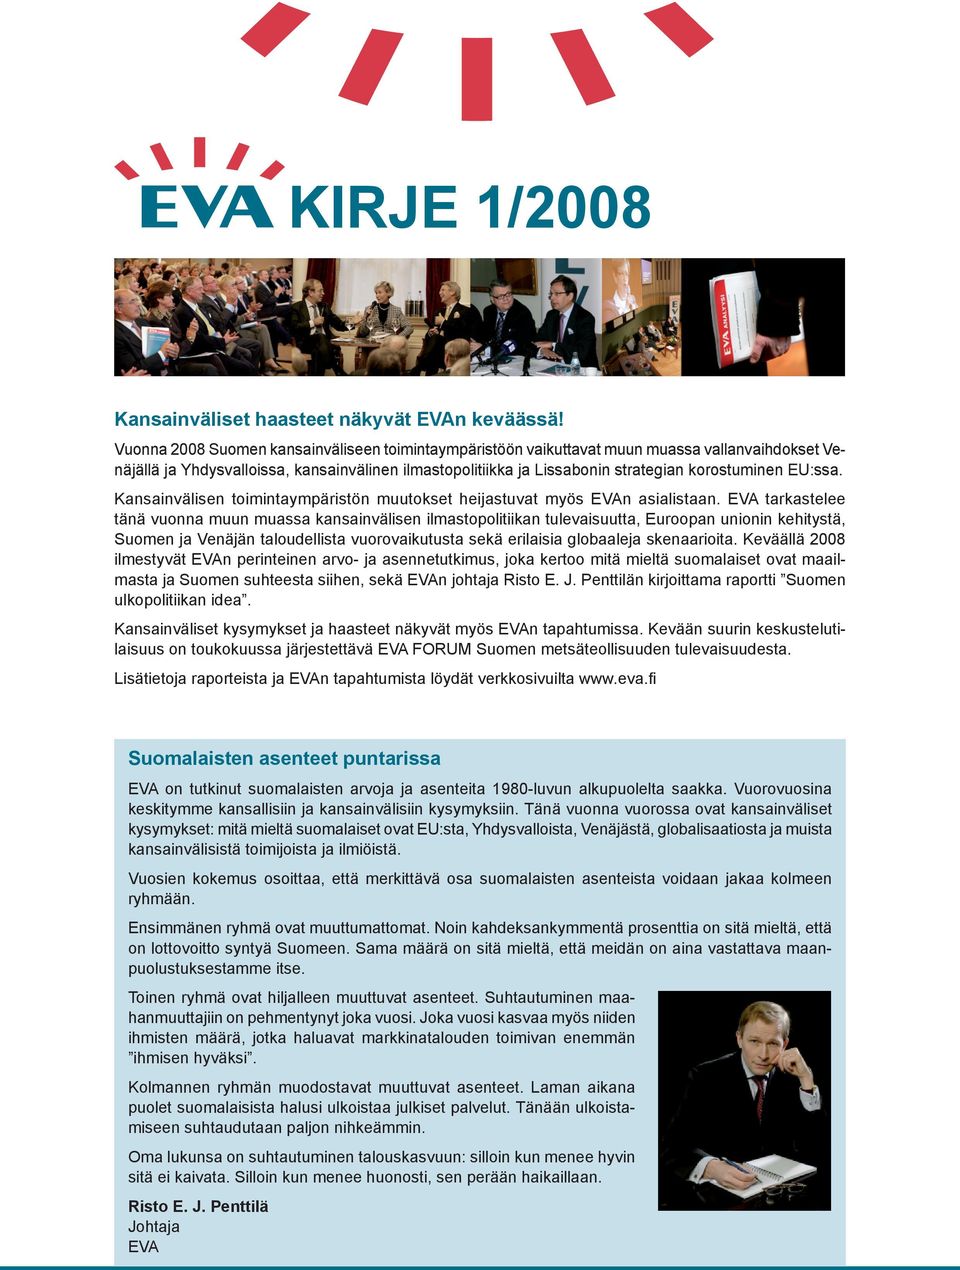 EU:ssa. Kansainvälisen toimintaympäristön muutokset heijastuvat myös EVAn asialistaan.